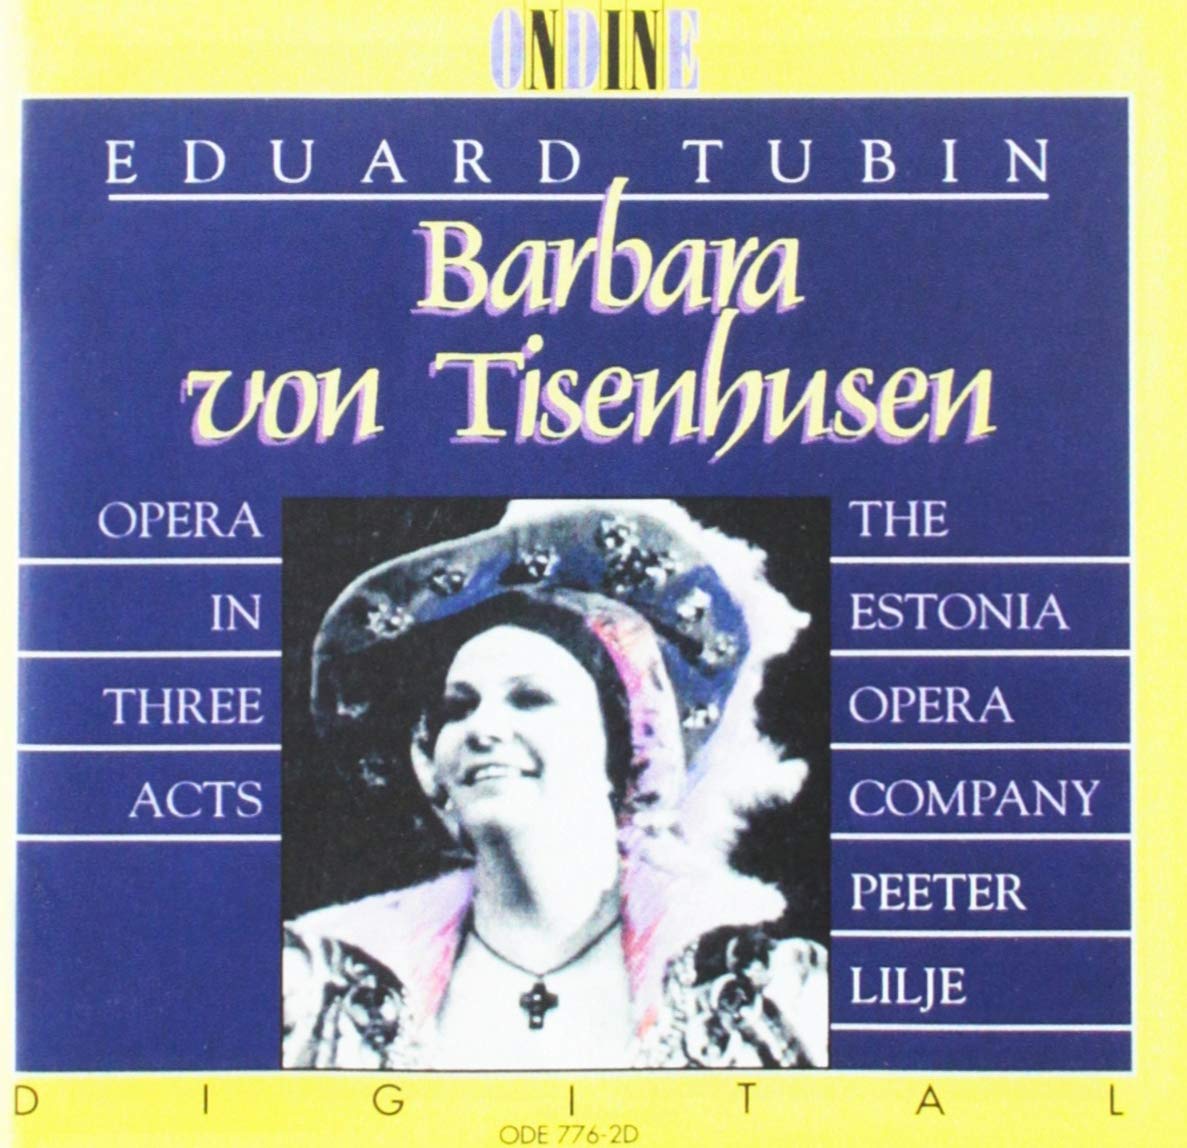 Tubin: Barbara Von Tisenhusen / Lilje, Estonia Opera